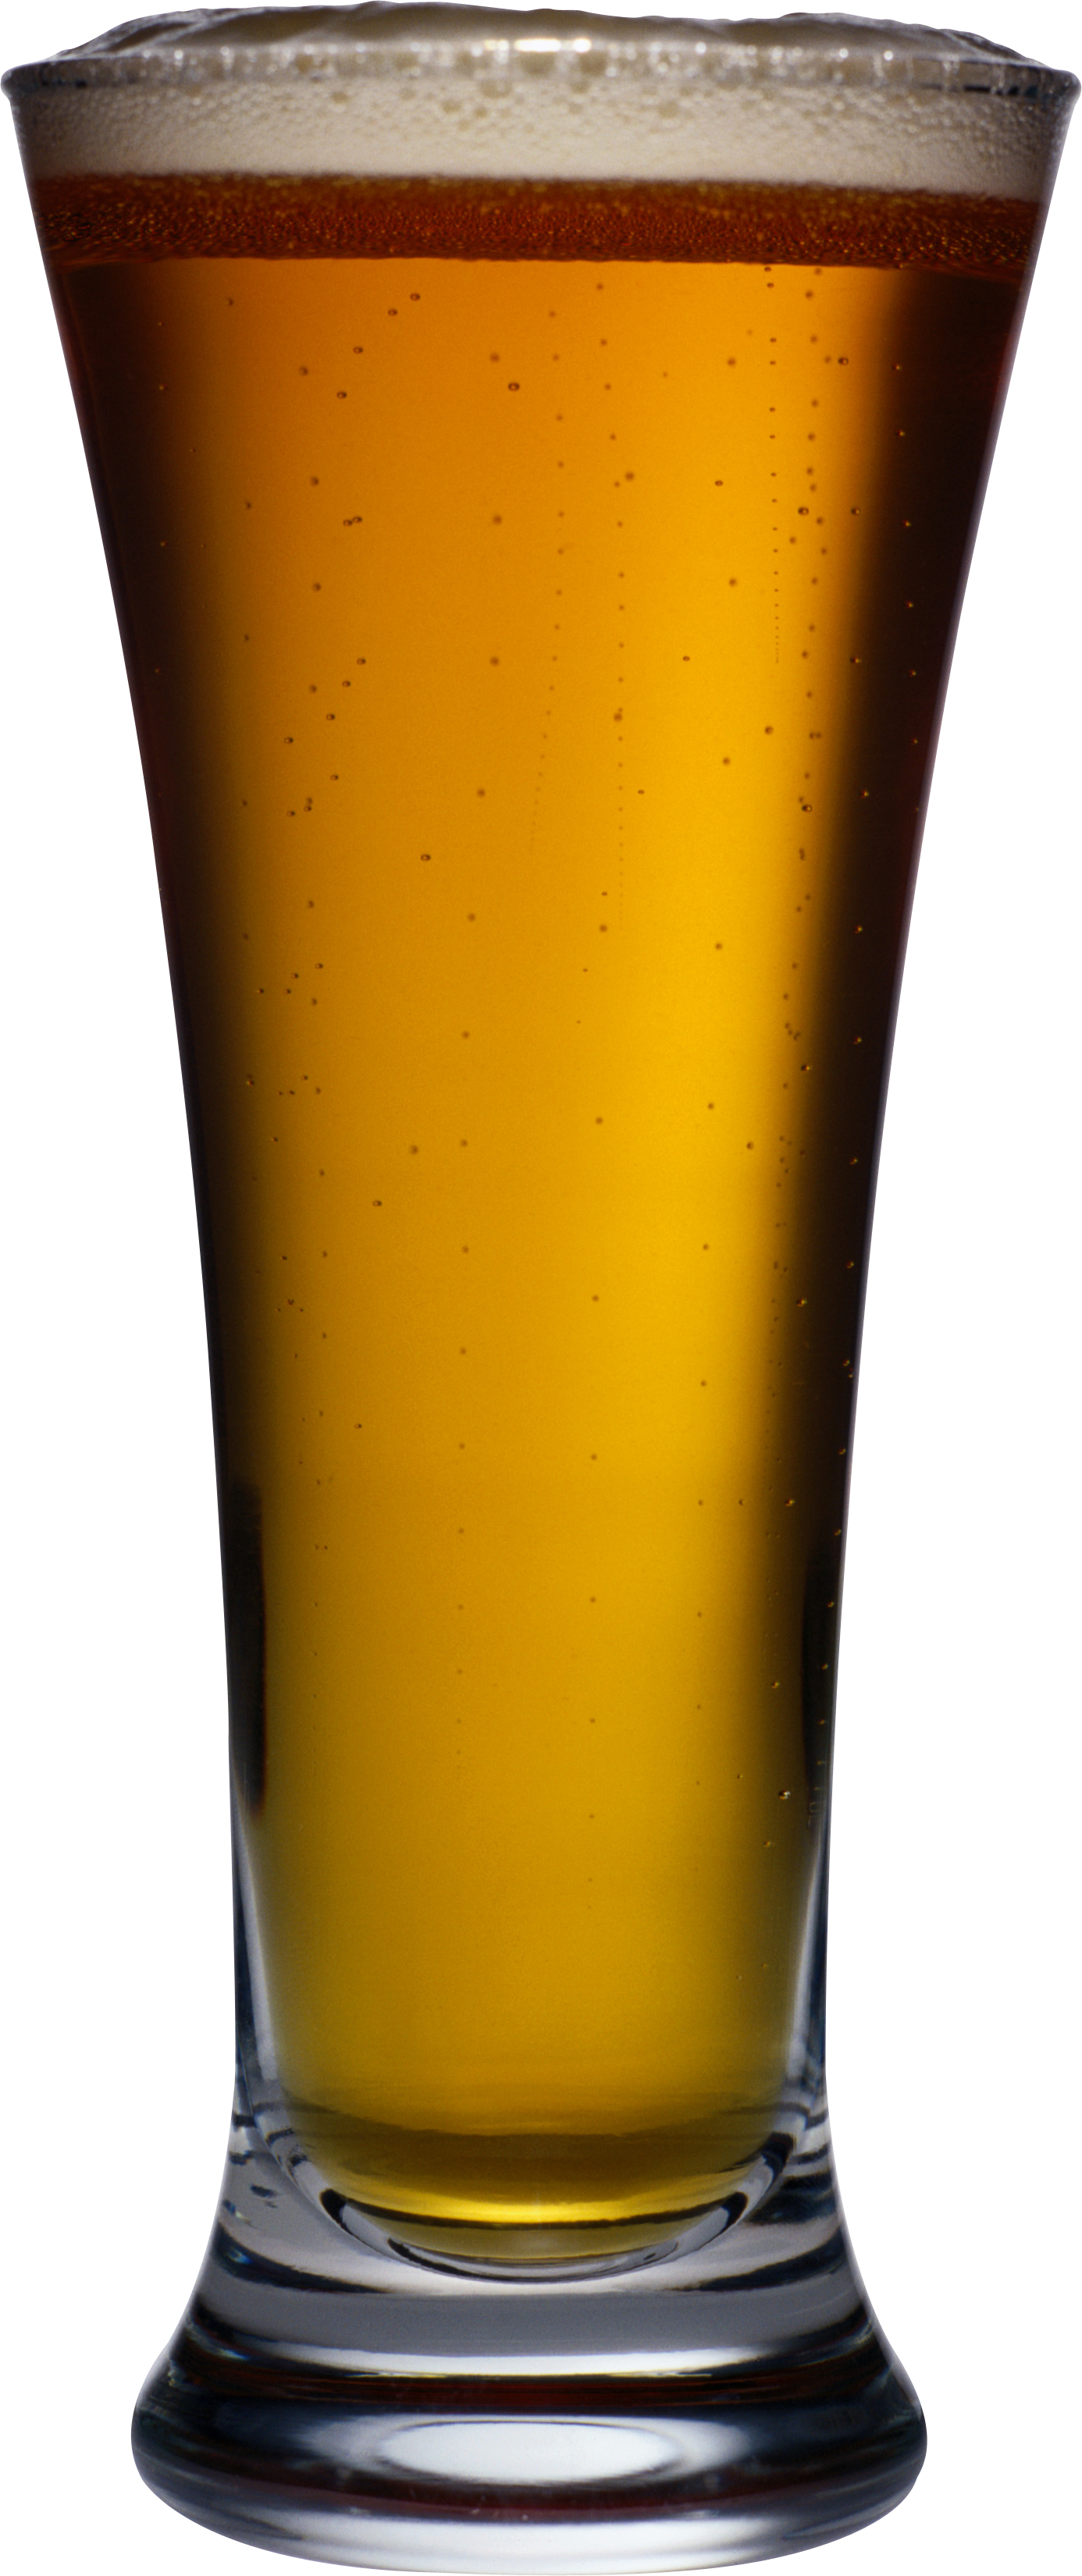 goblet beer PNG image